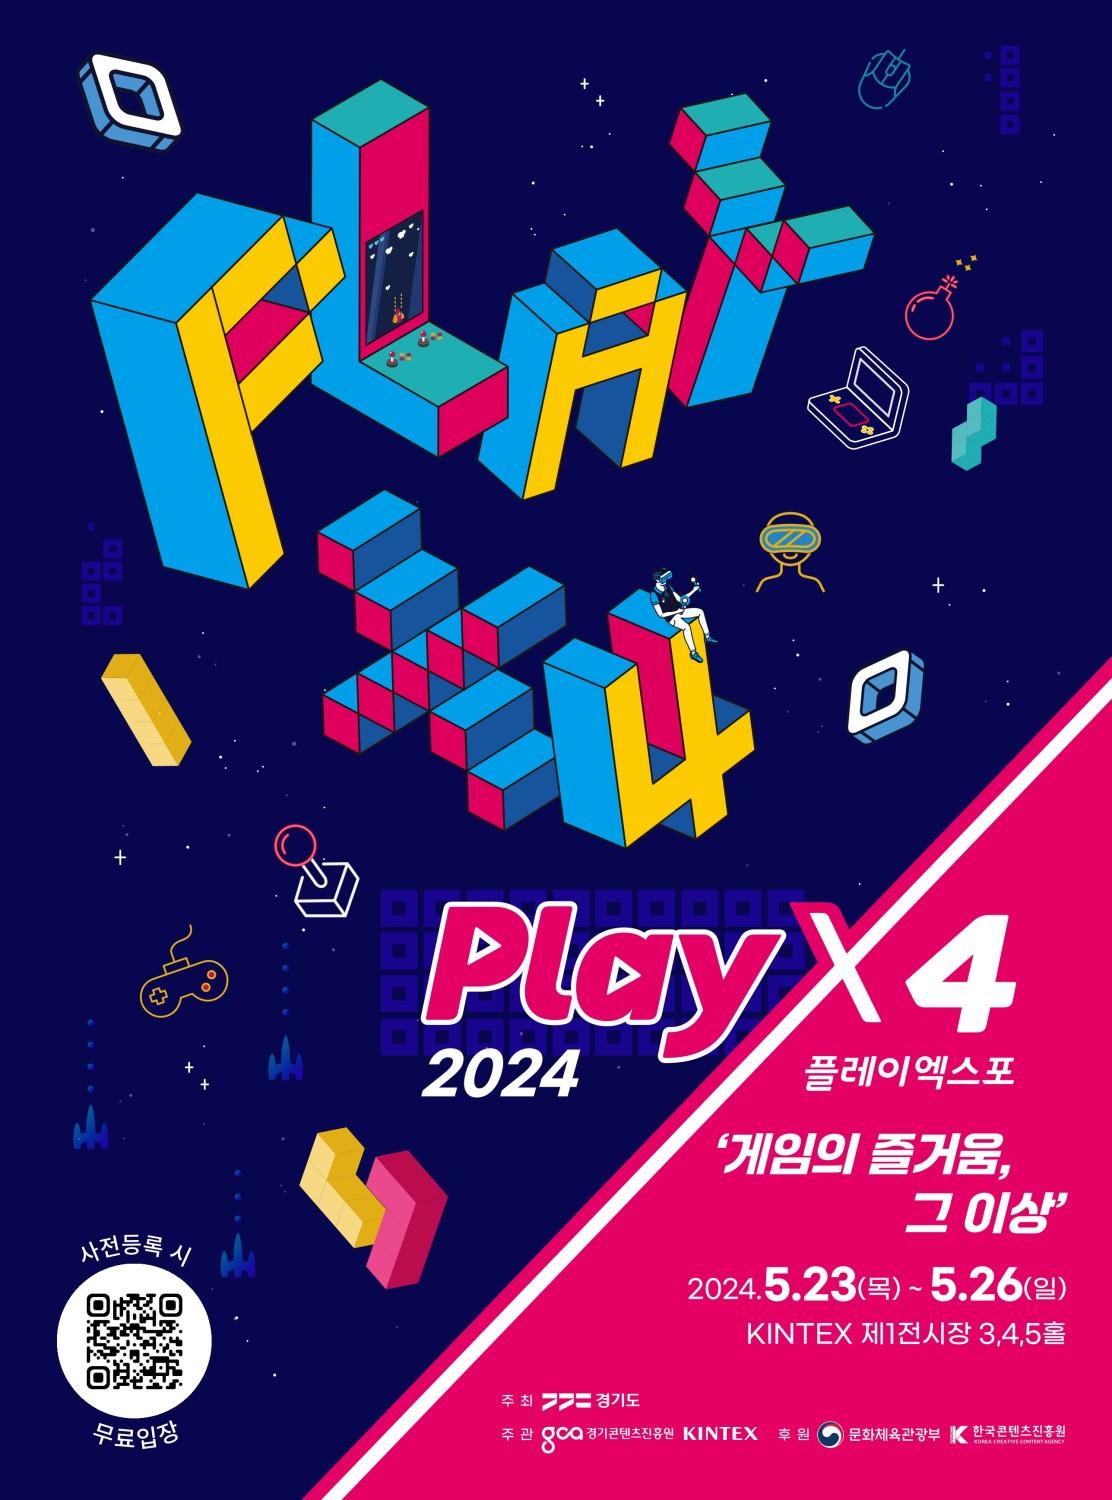 «2024 PlayX4 откроется на KINTEX 23 мая: создание платформы для общения, выходящей за рамки игрового удовольствия»